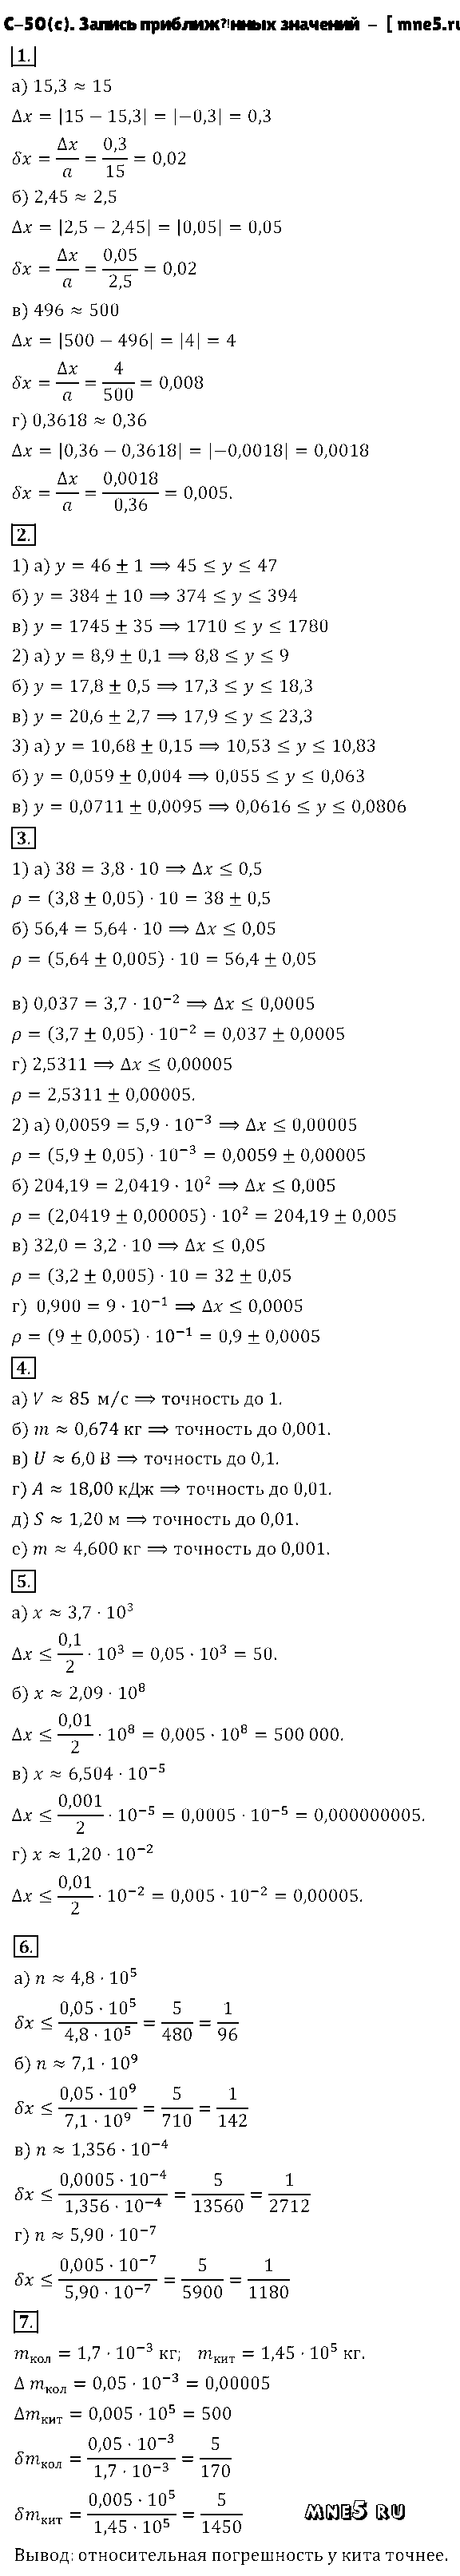 ГДЗ Алгебра 8 класс - С-50(с). Запись приближённых значений